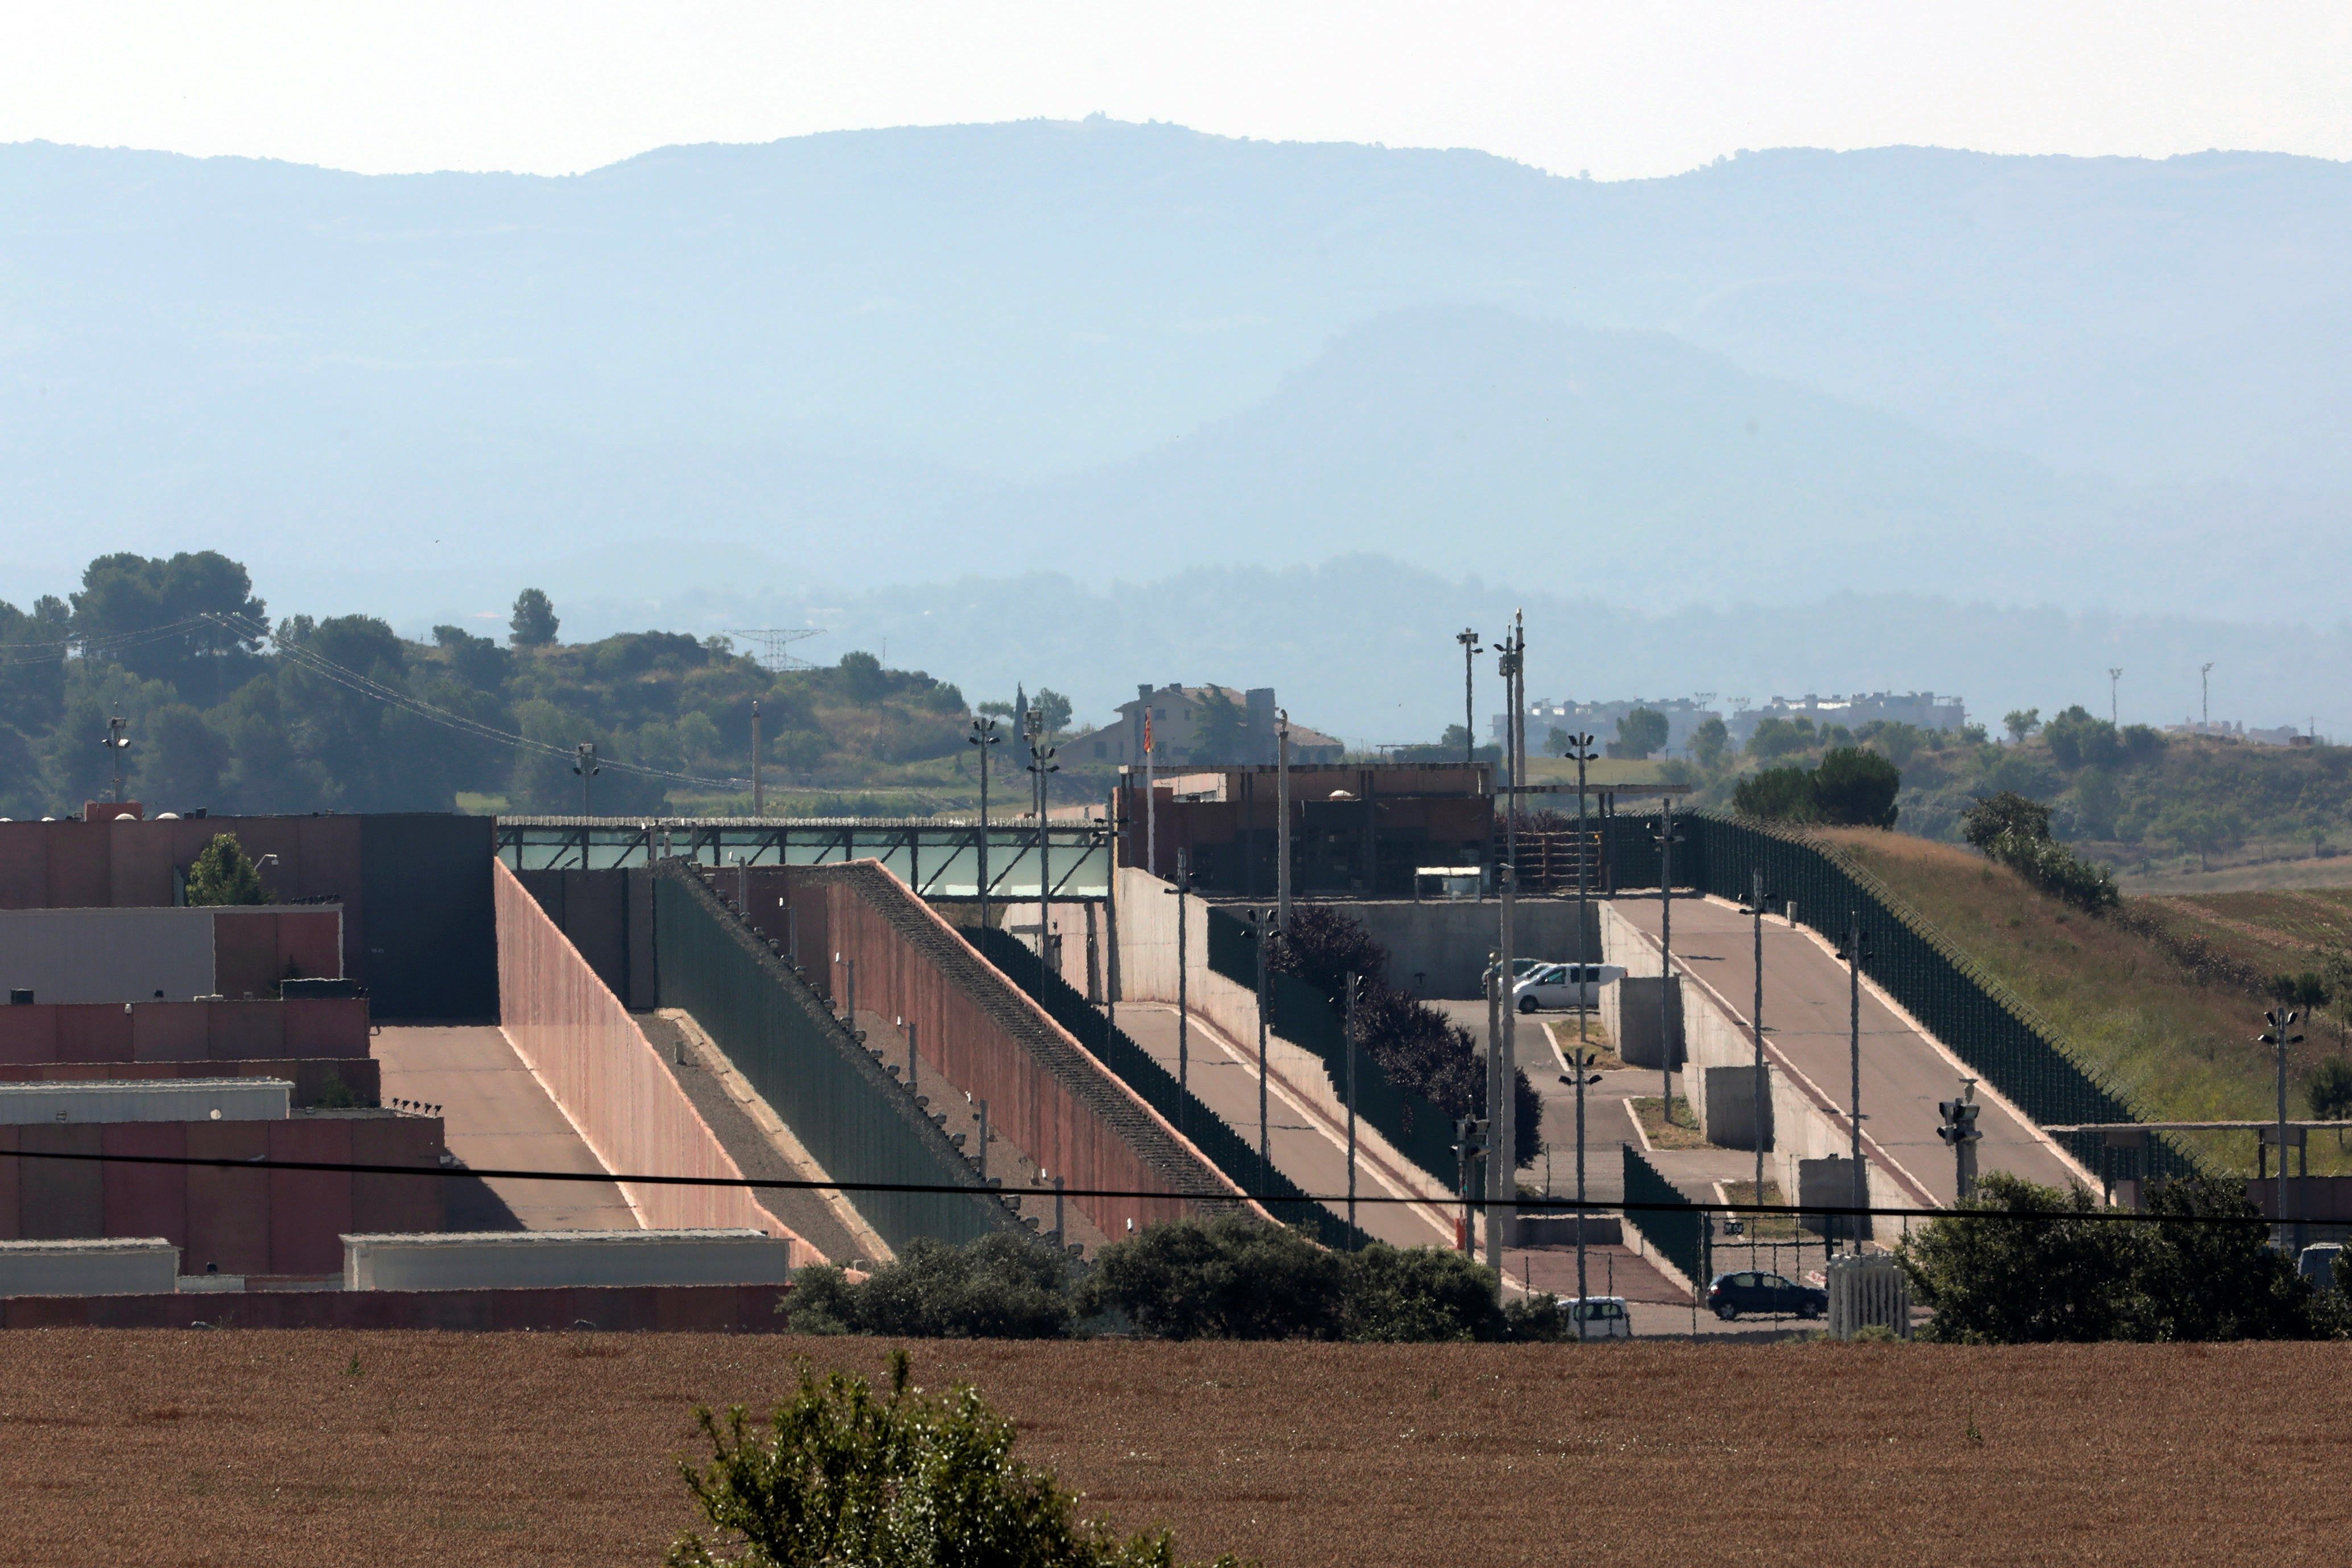 Vista del centro penitenciario “Els Lledoners” en Barcelona. EFE/Archivo